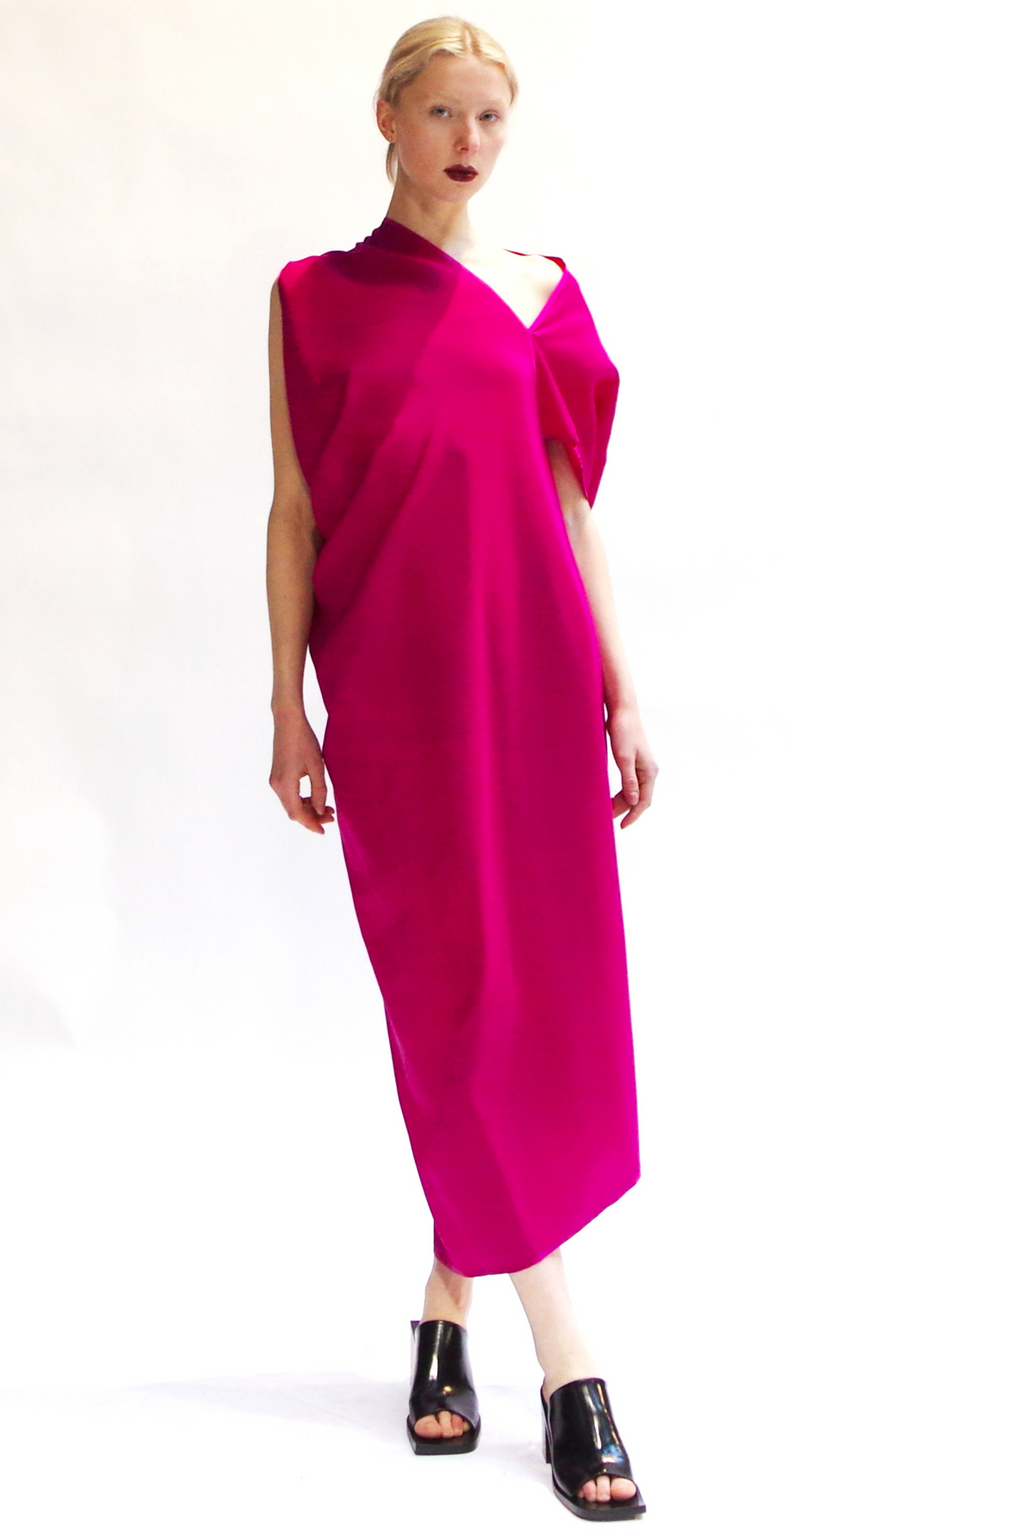 Assymetric sheet dress